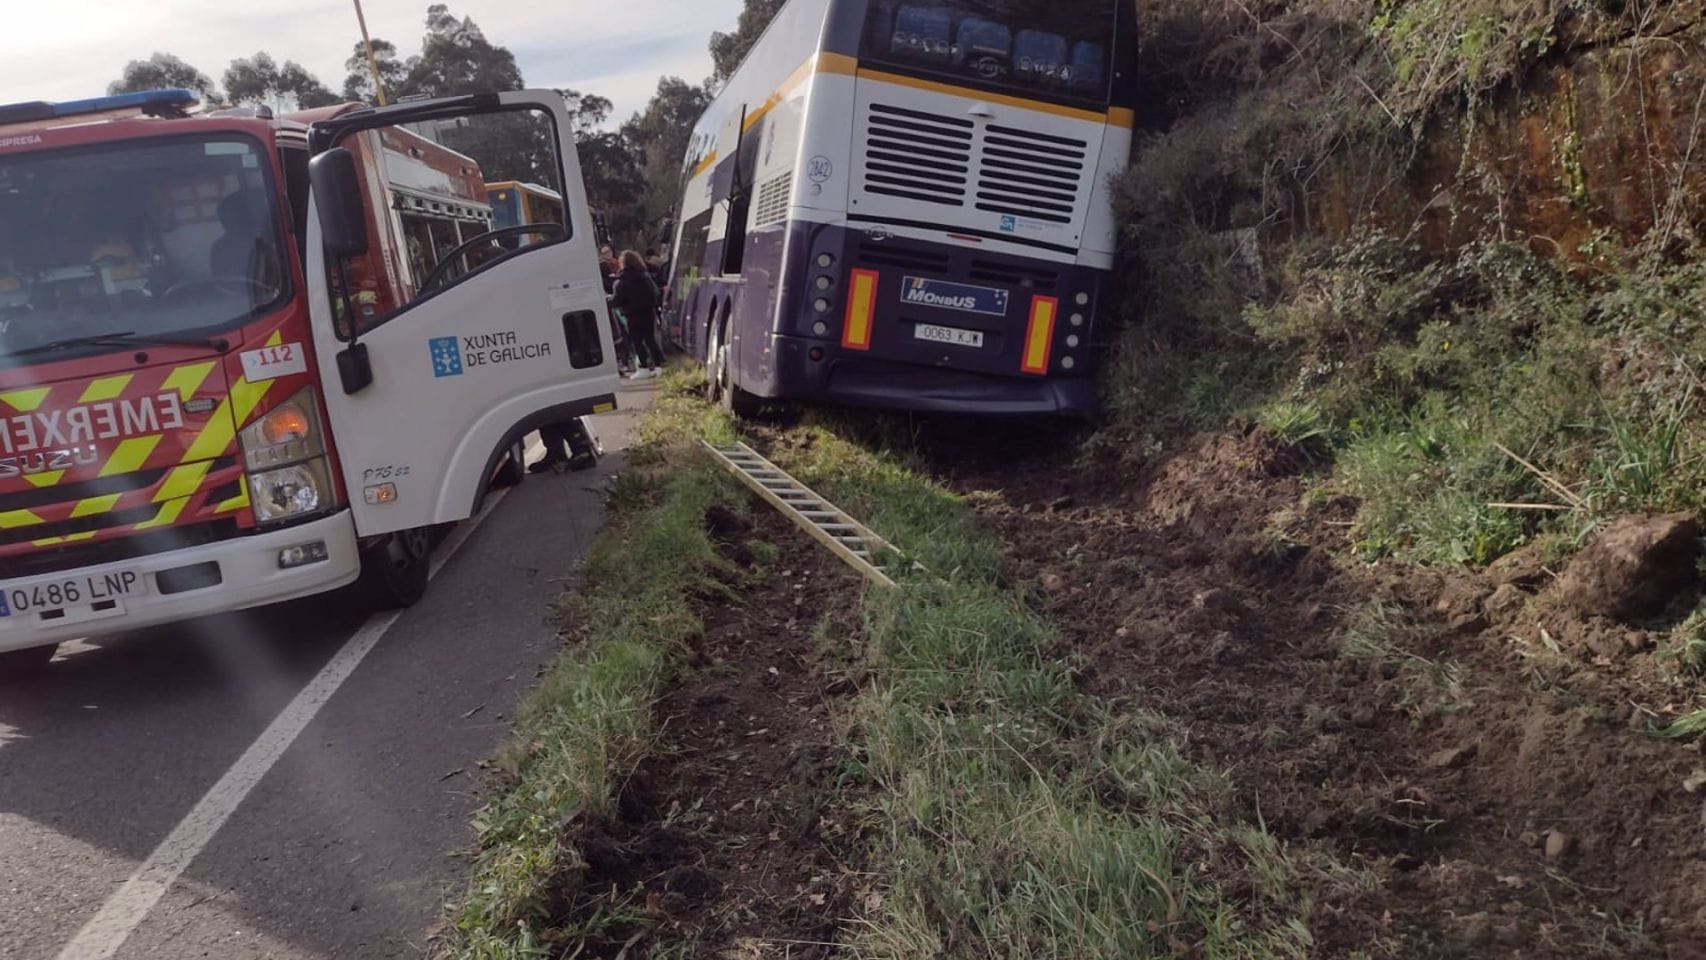 Accidente del autobús en San Xusto, en el ayuntamiento de Lousame